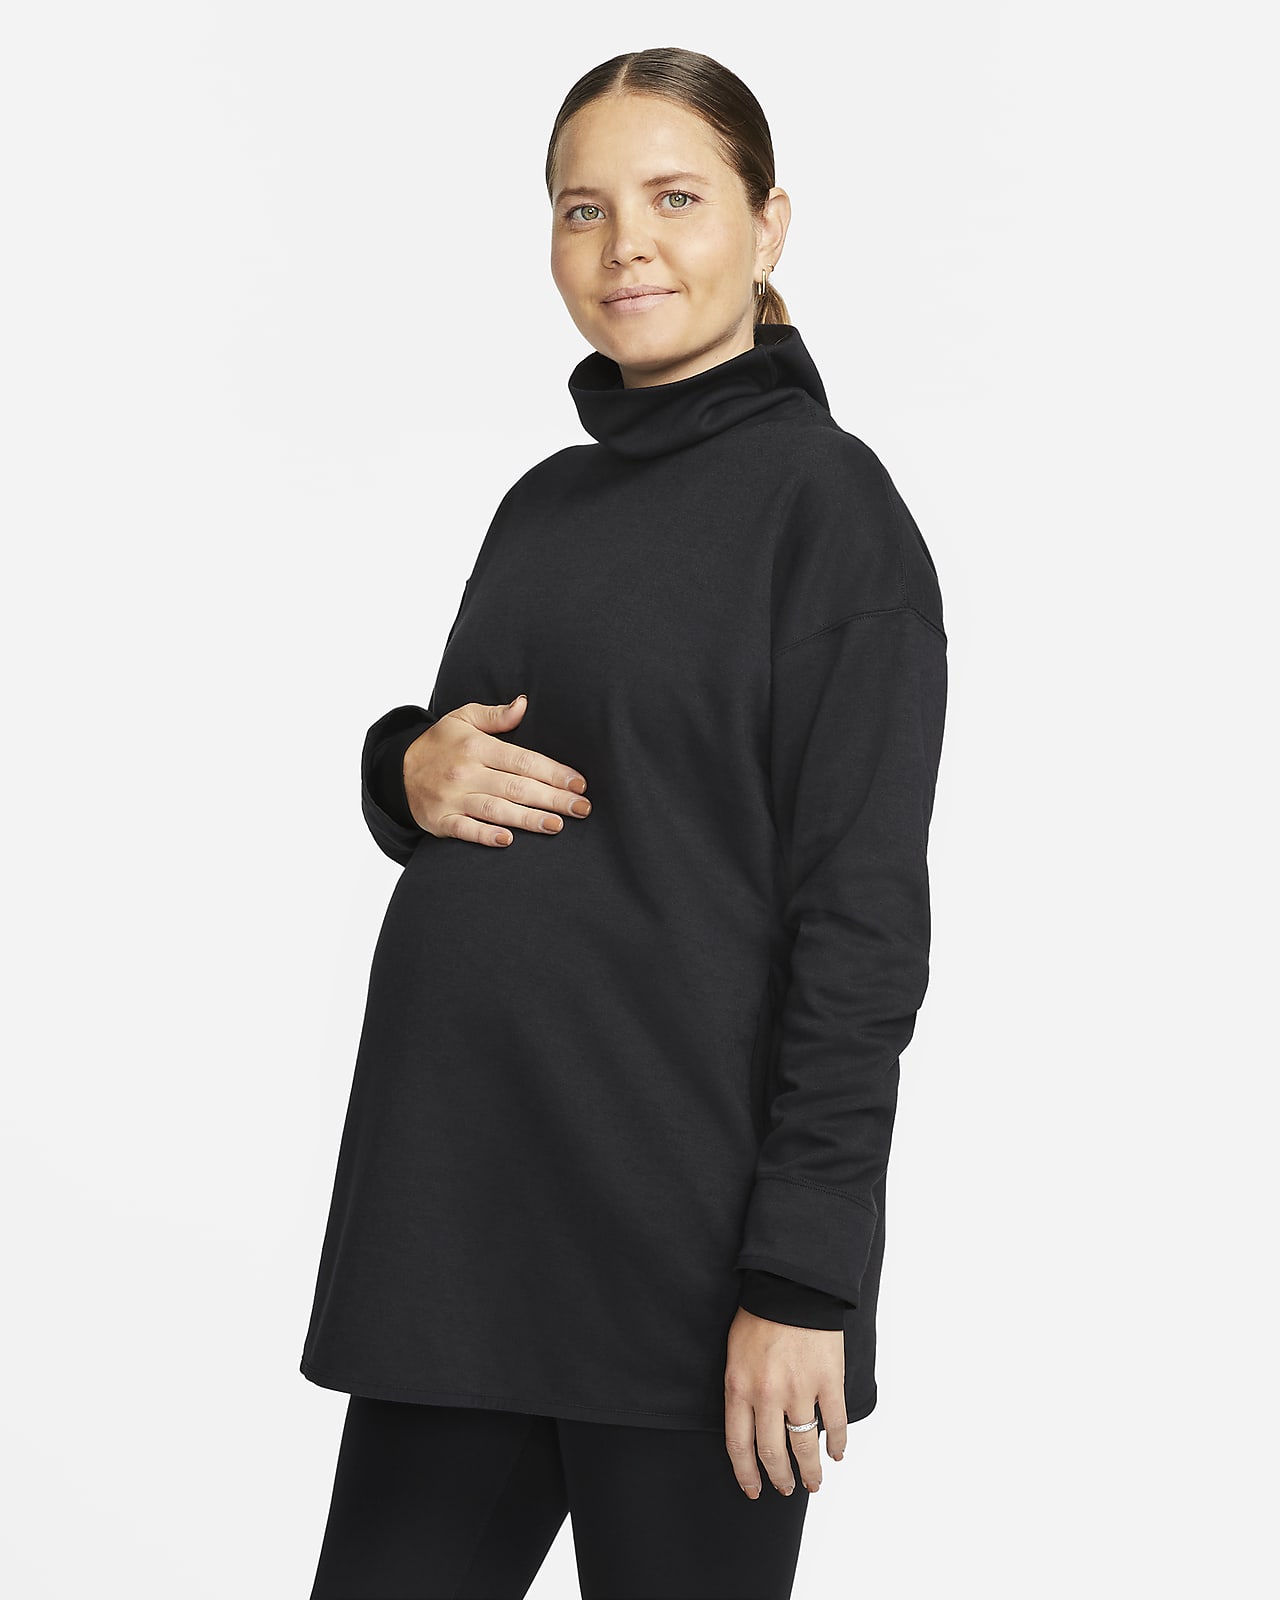 Sudadera sin cierre para mujer (de maternidad) (M). Nike.com